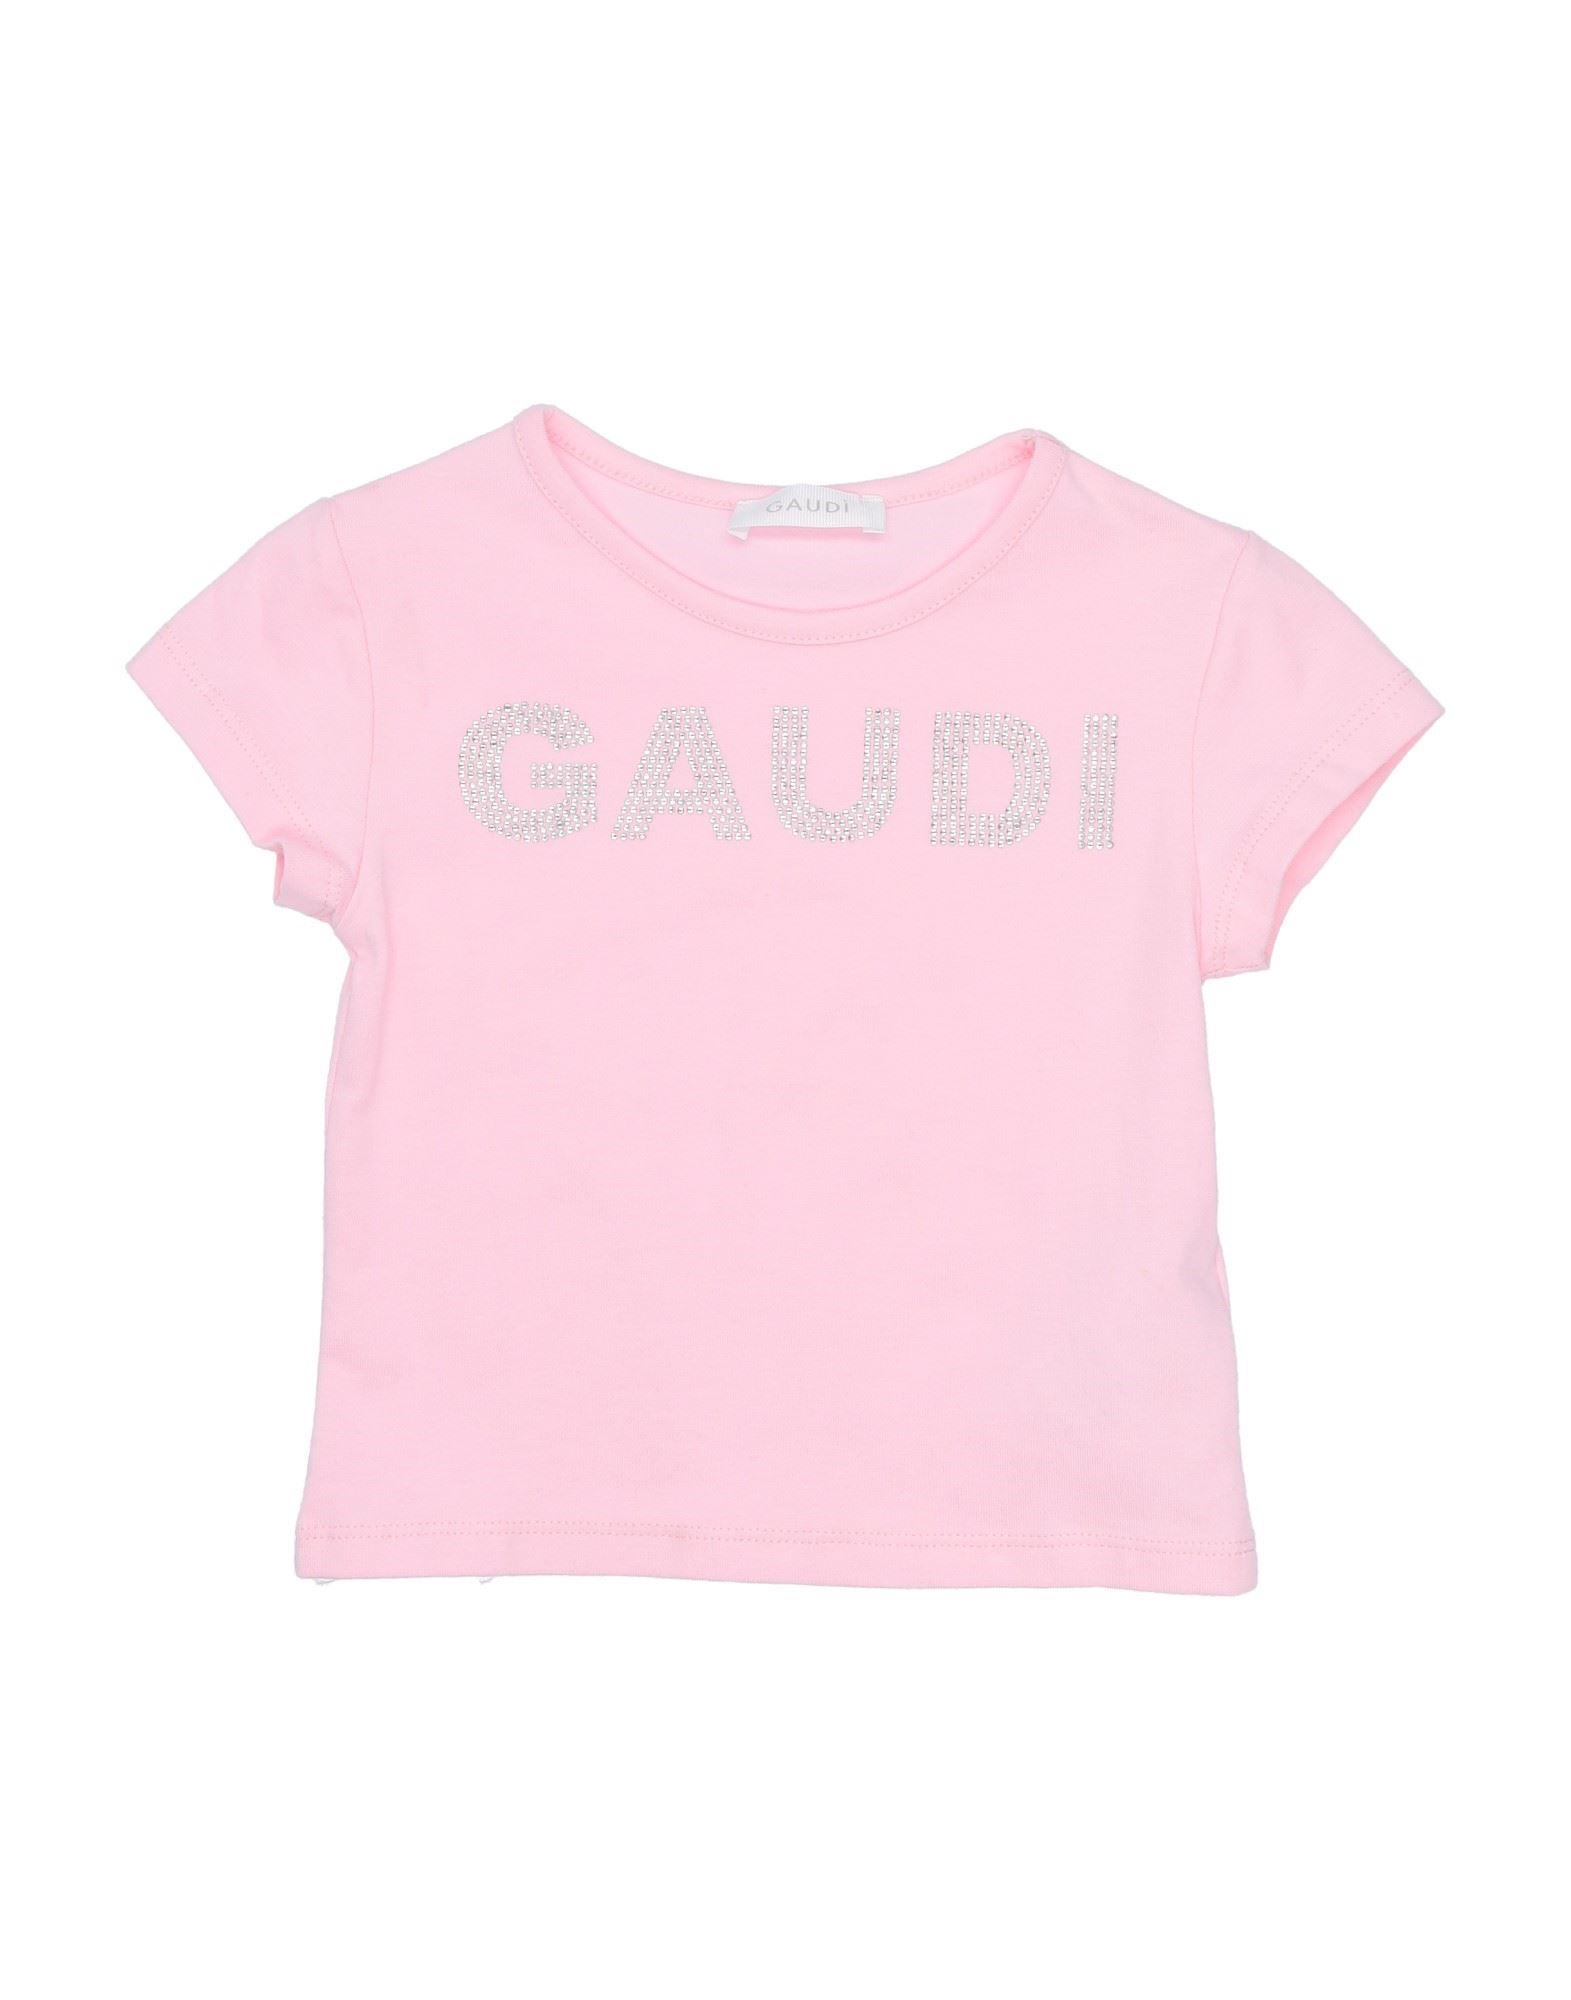 Gaudì Kids'  Toddler Girl T-shirt Pink Size 7 Cotton, Elastane